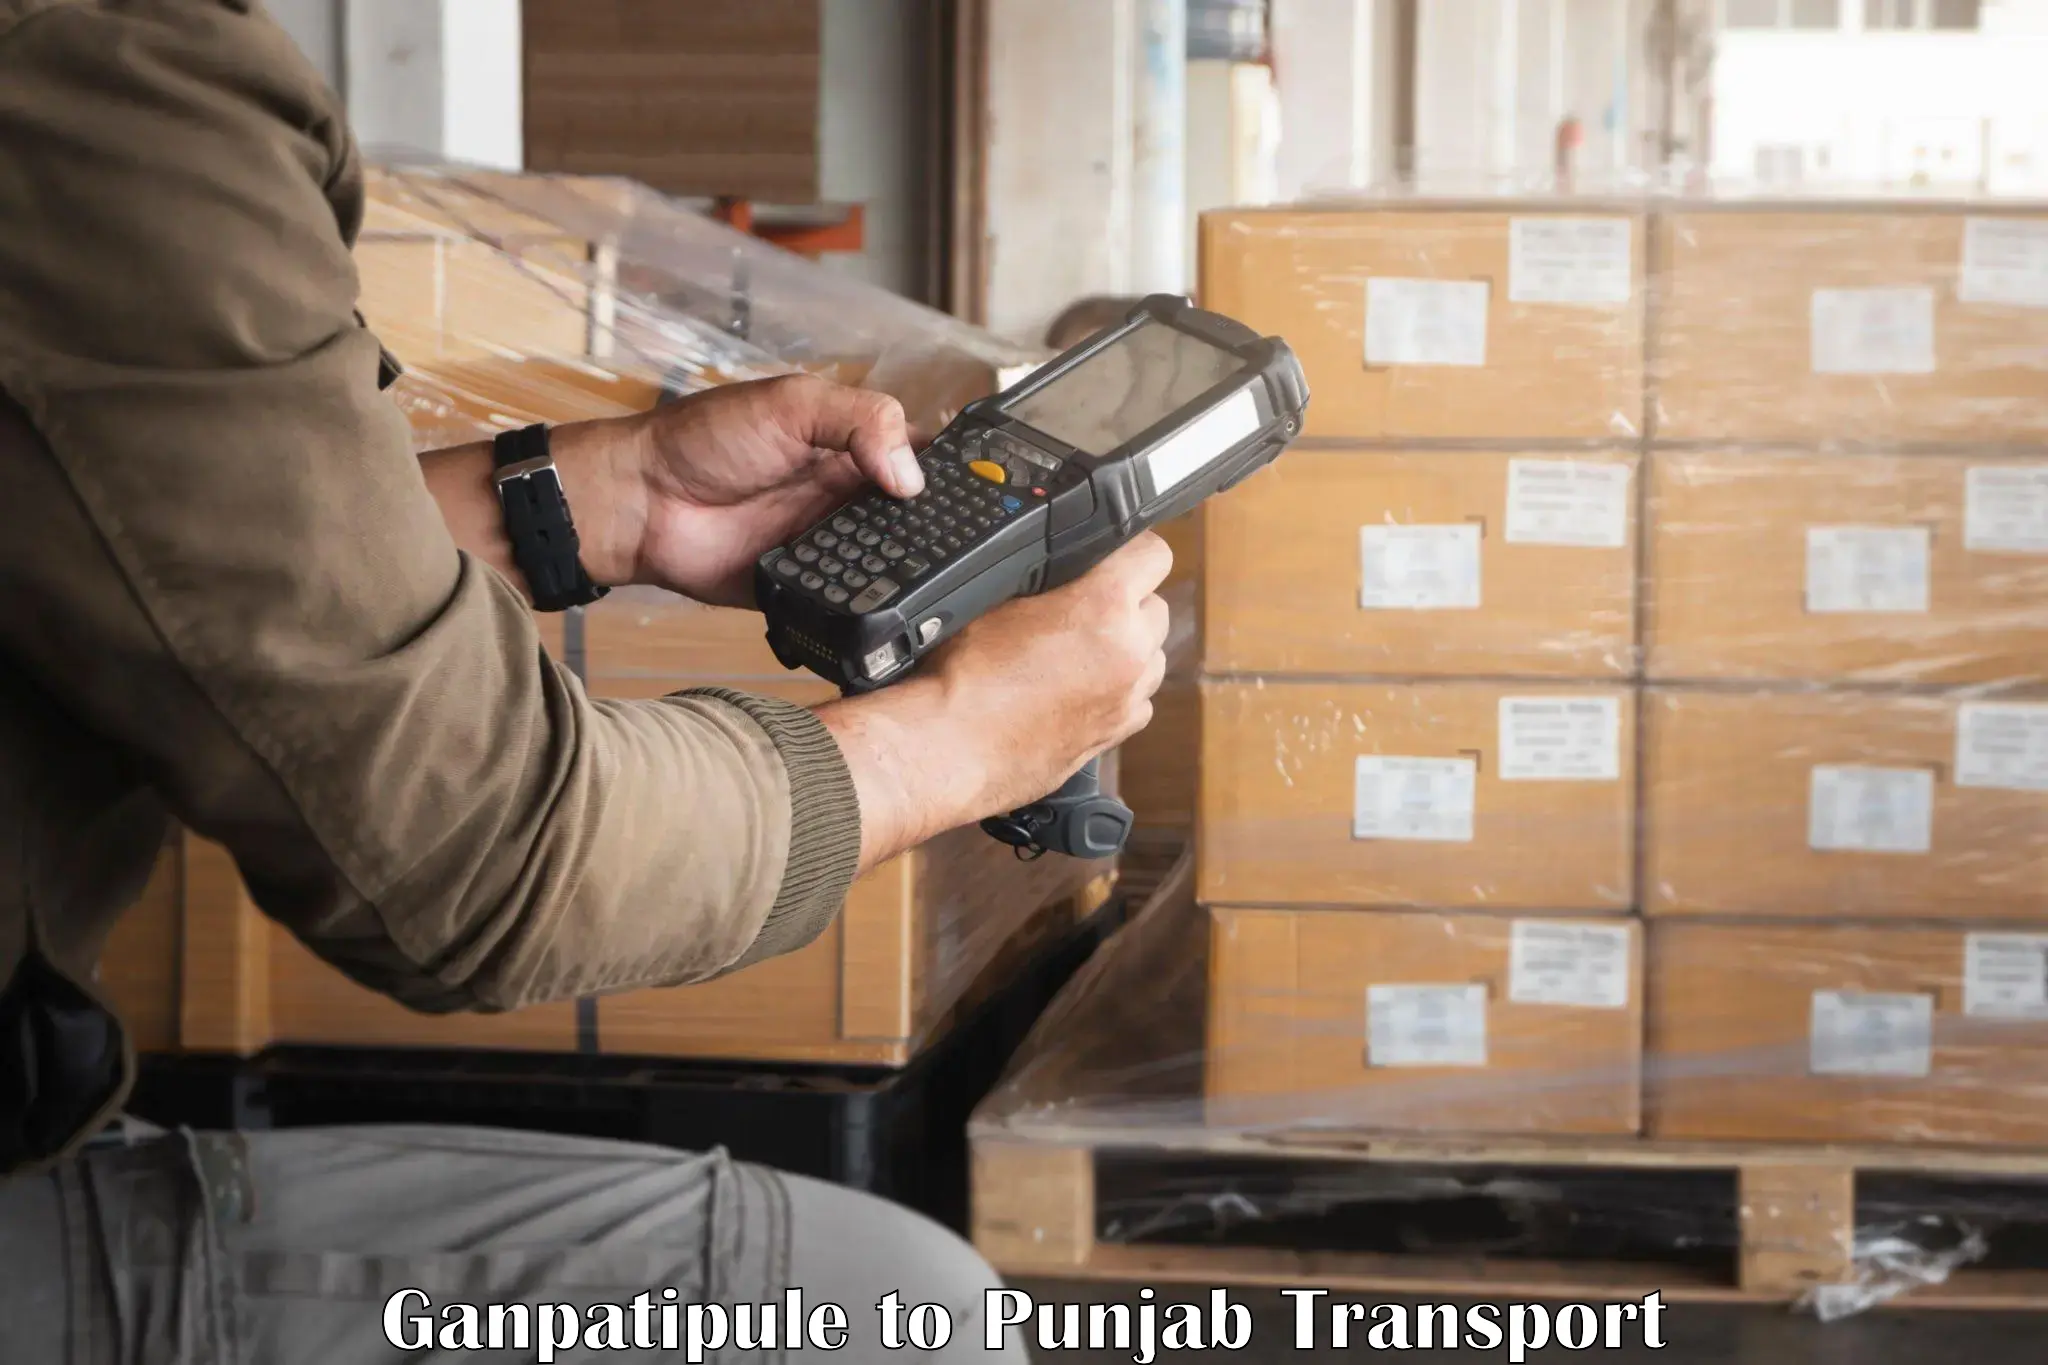 Daily transport service Ganpatipule to Punjab